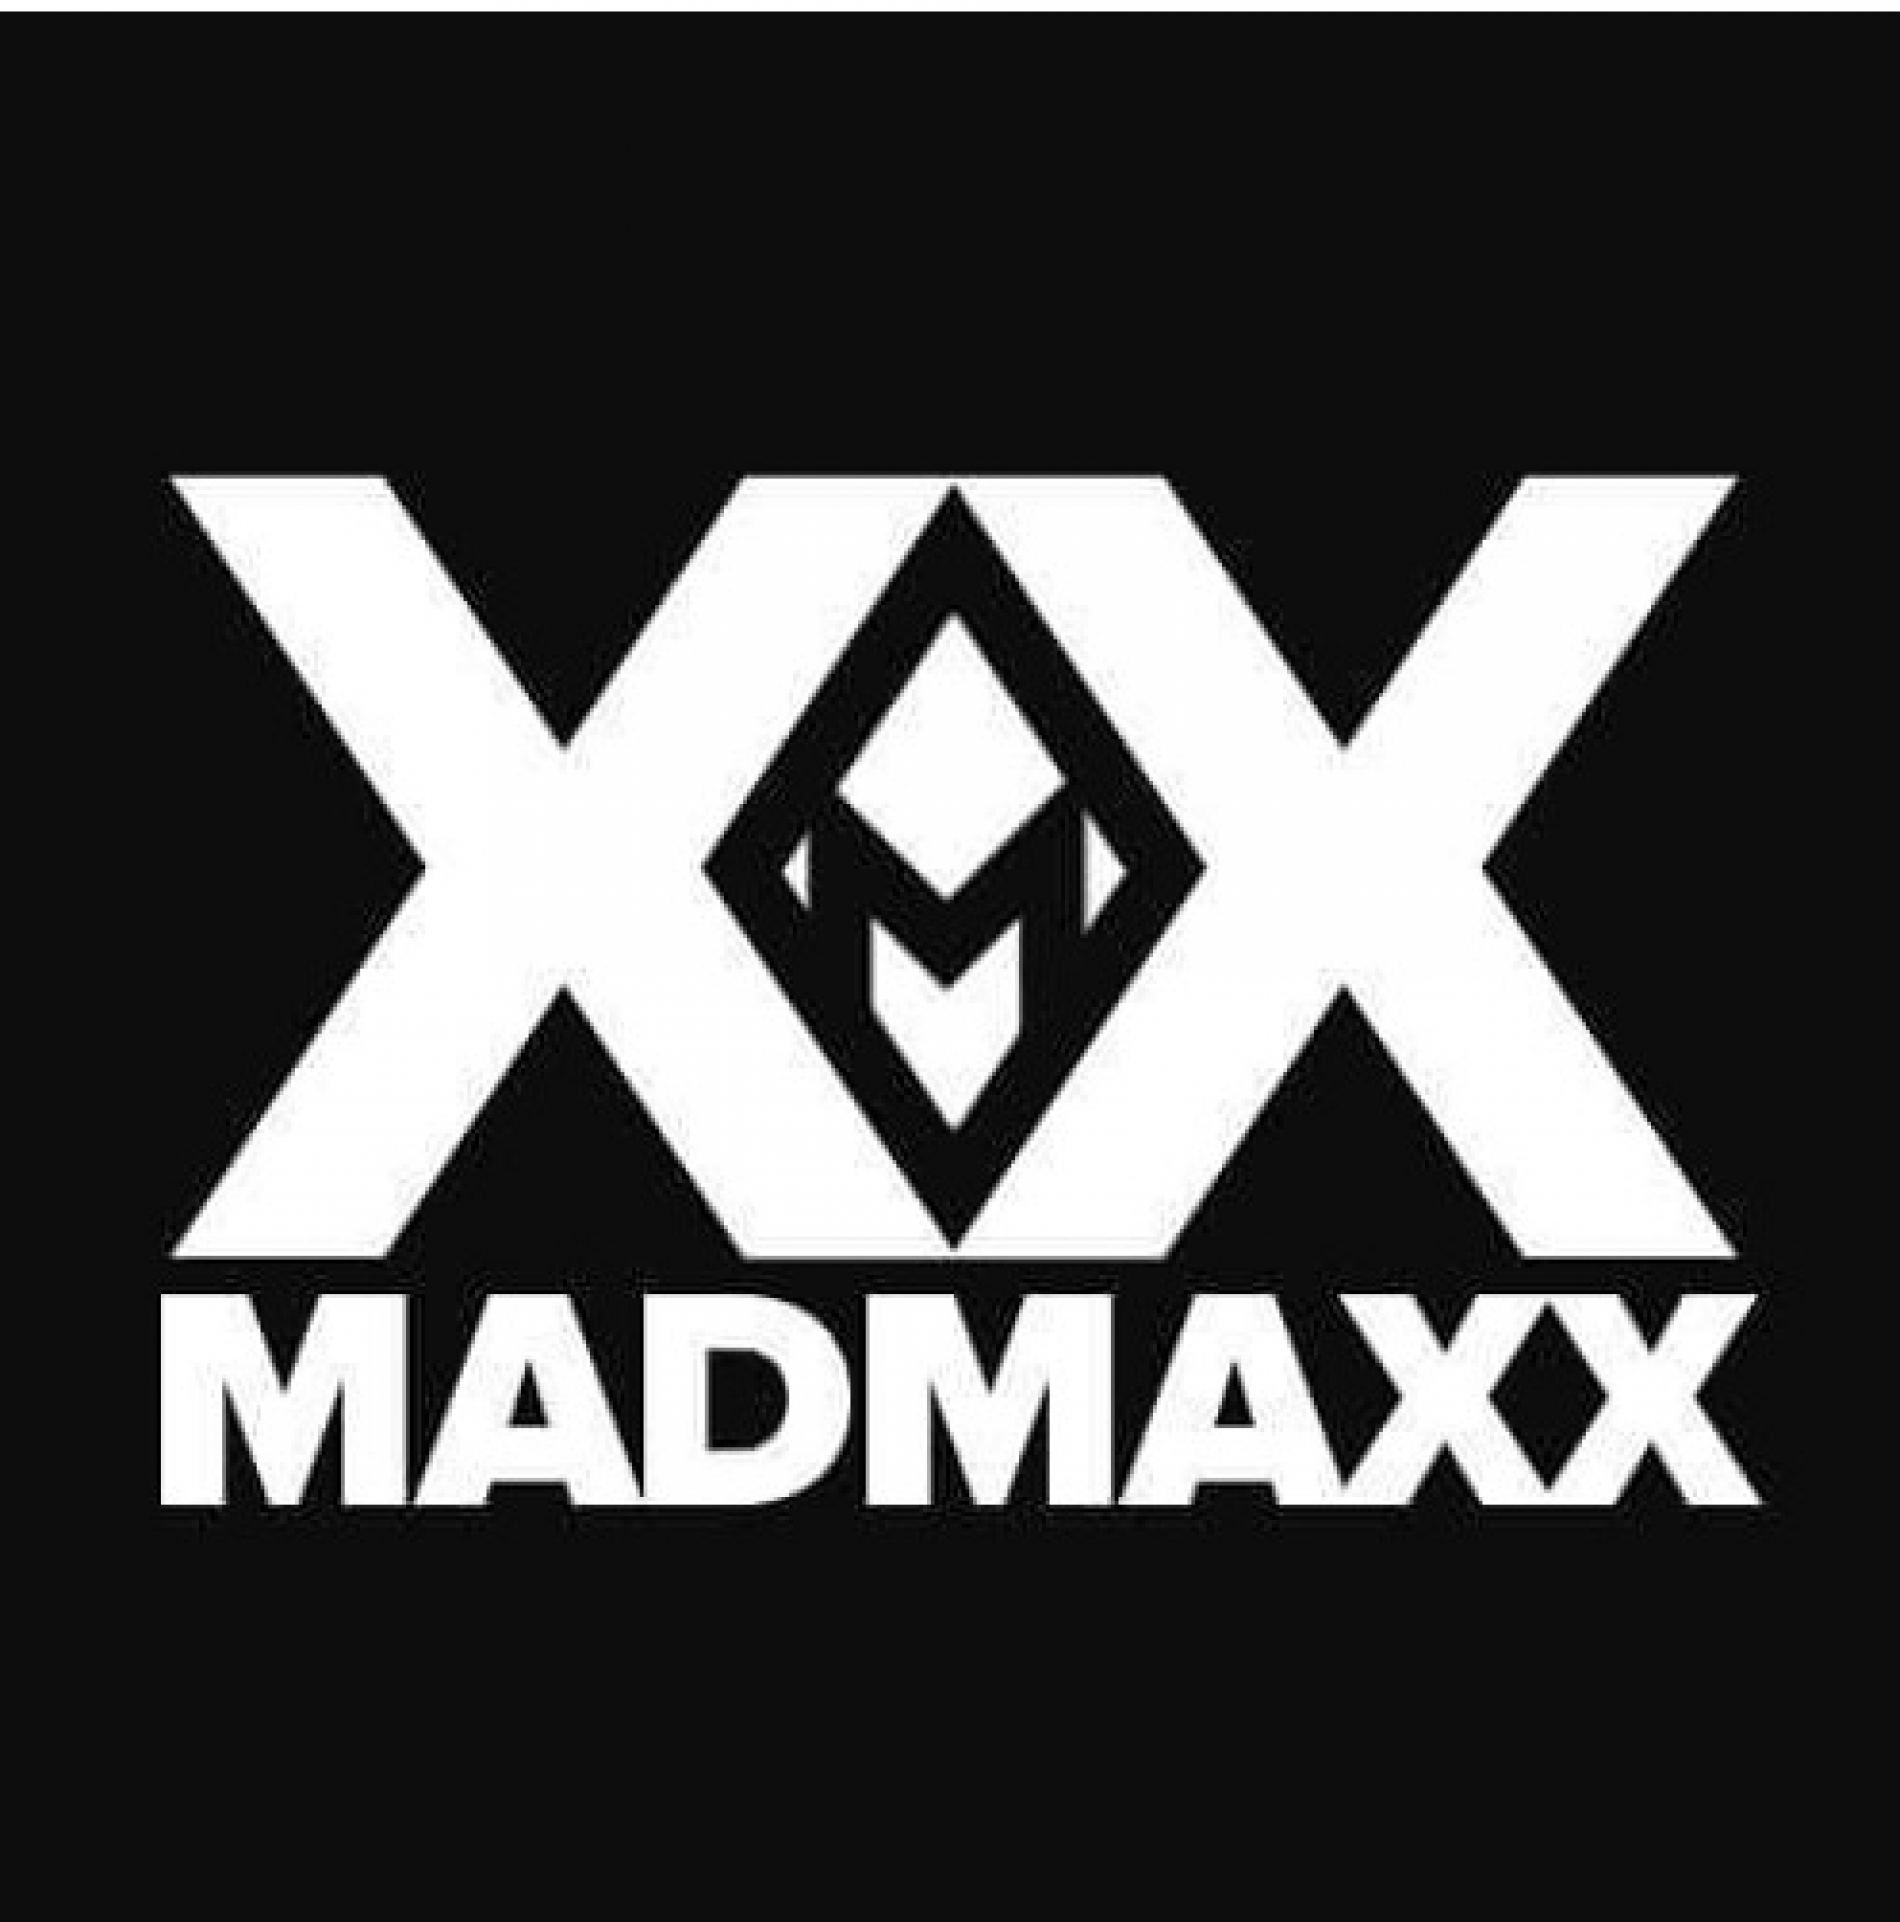 Madmaxx – All Alone